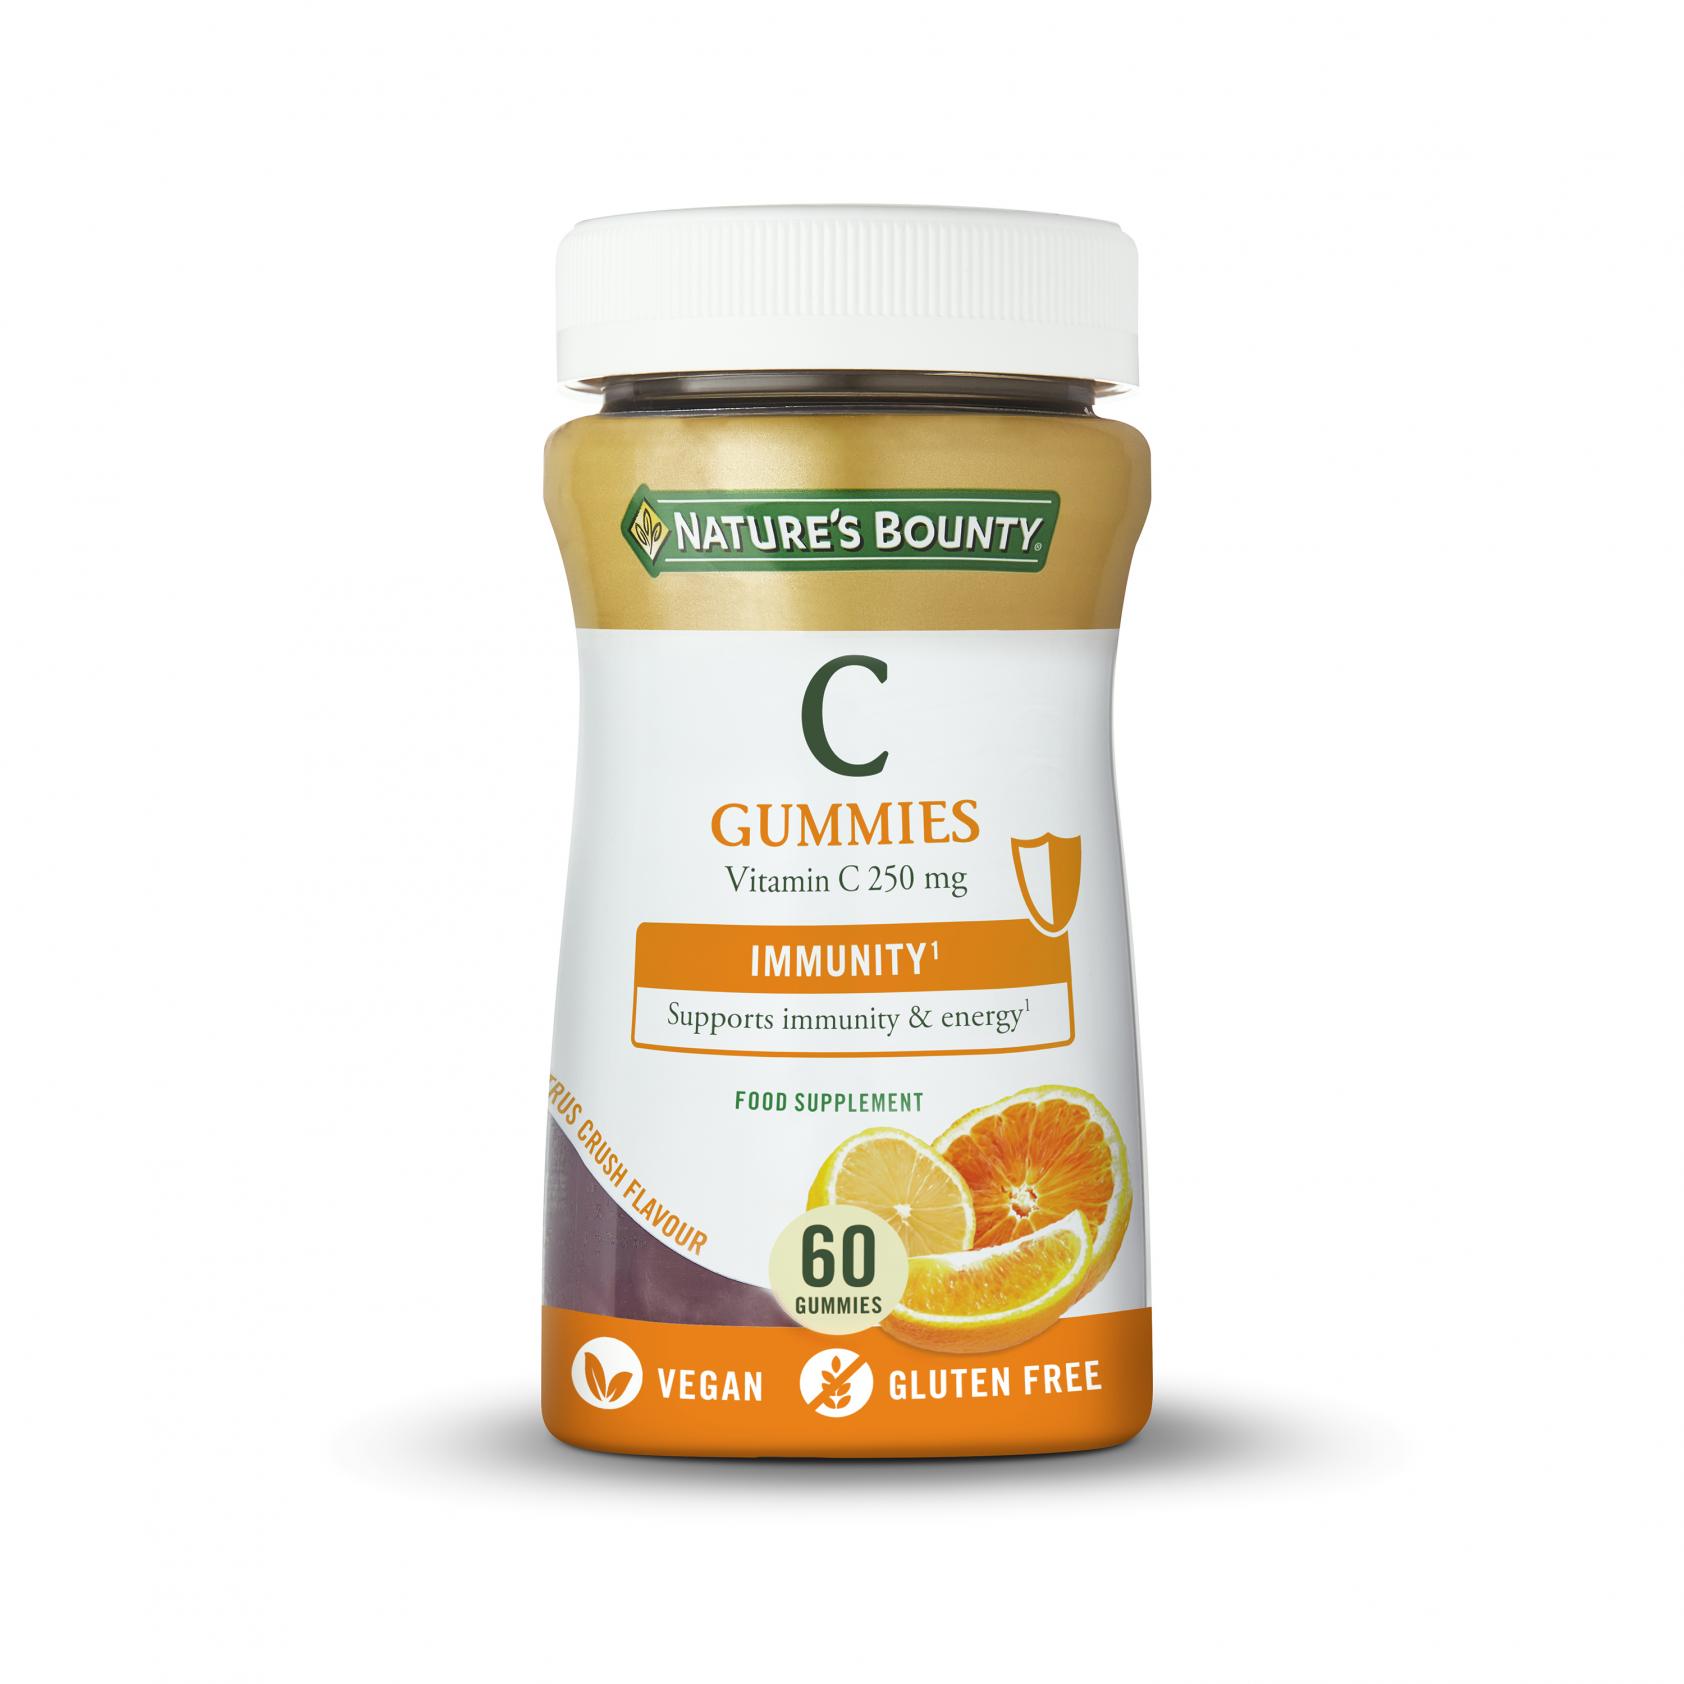 C Gummies Vitamin C 250mg 60's